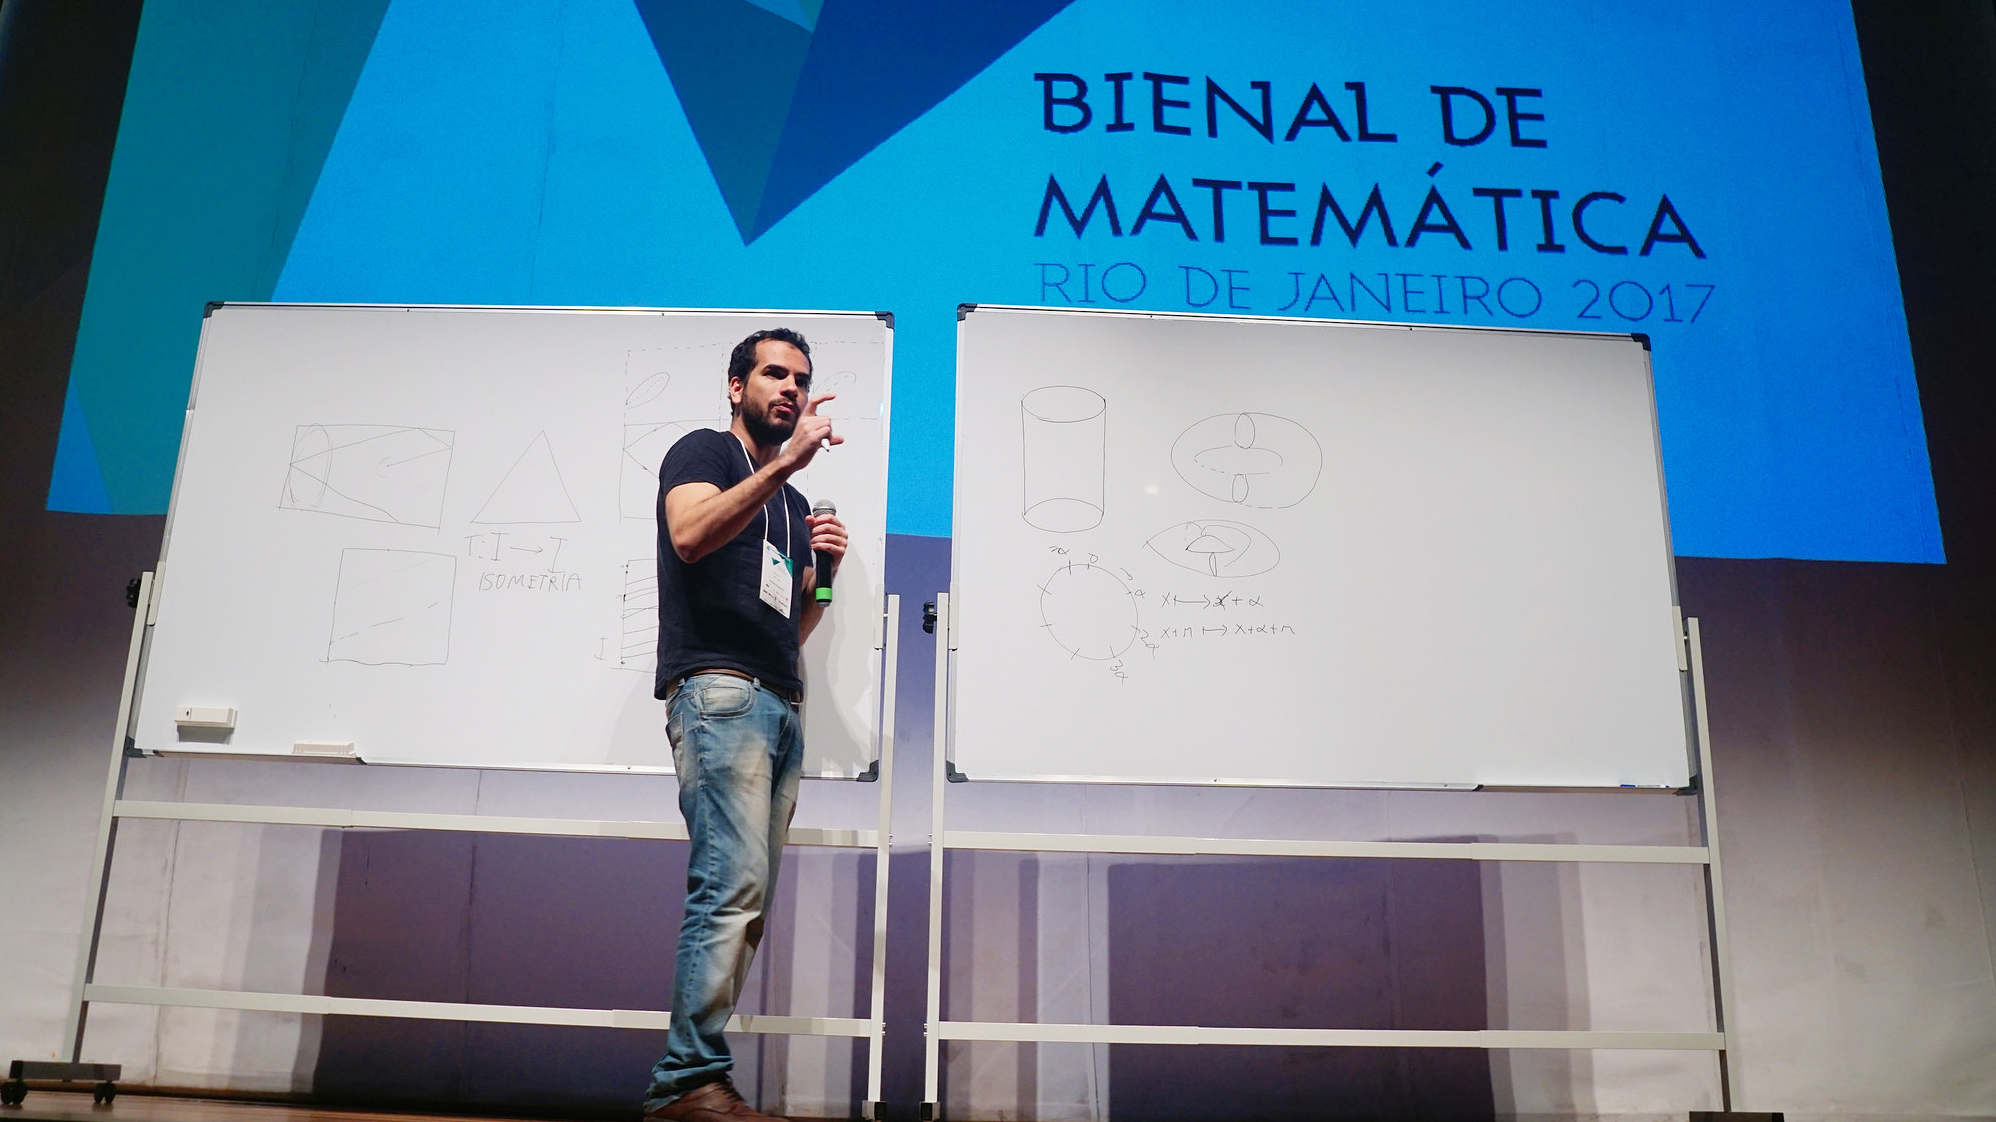 Arthur Avila lors de la biennale de maths à Rio 